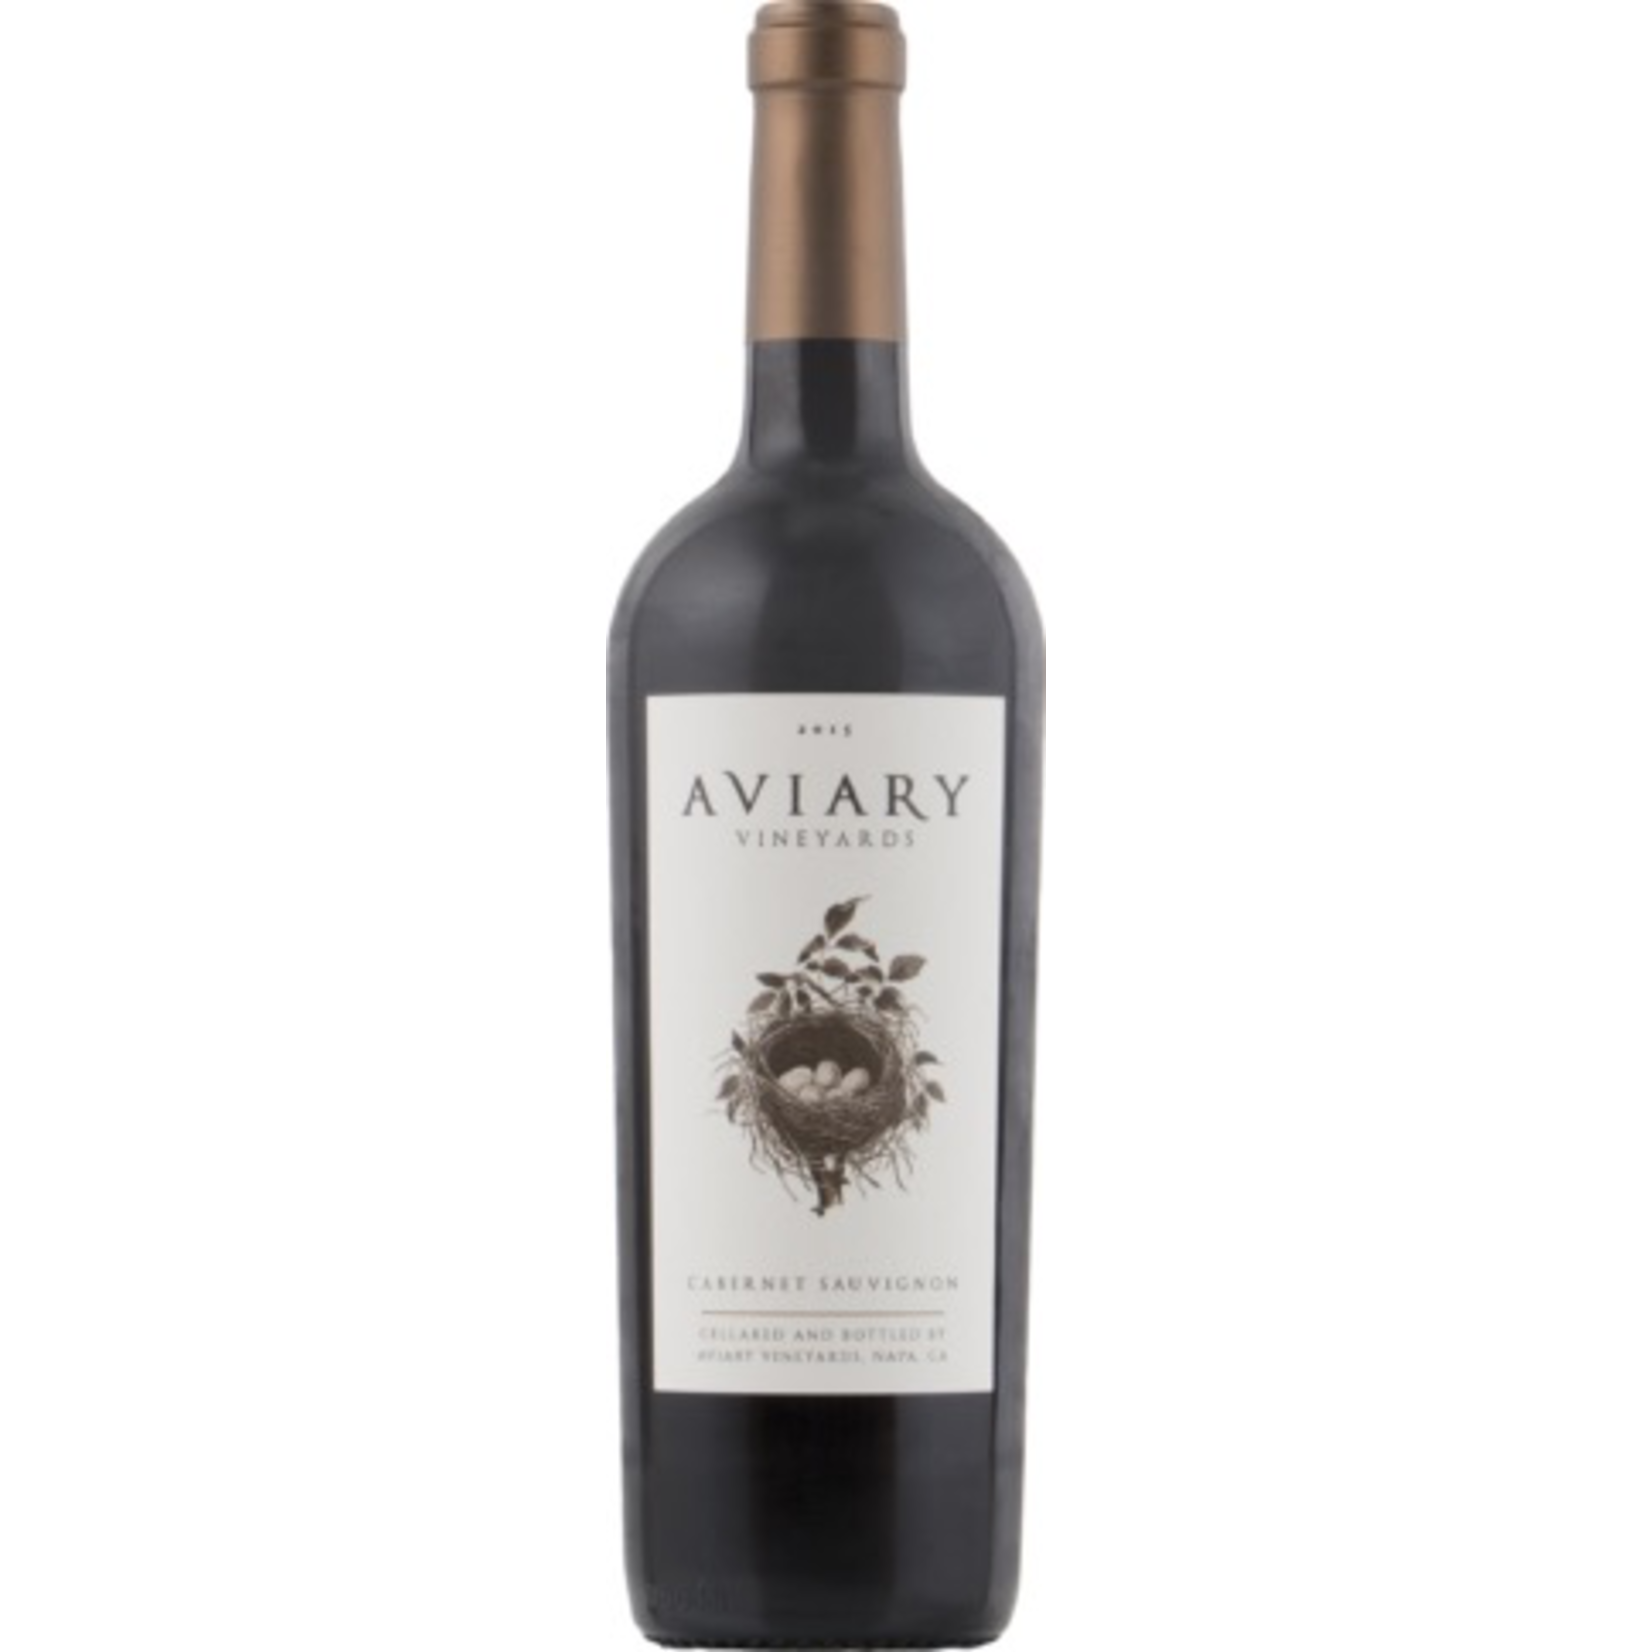 2018, Aviary Vineyards, Cabernet Sauvignon, Multi AVA, Napa Valley, California, 14.5% Alc, Ctna, T2,Sw2,Sm3,C3,I4